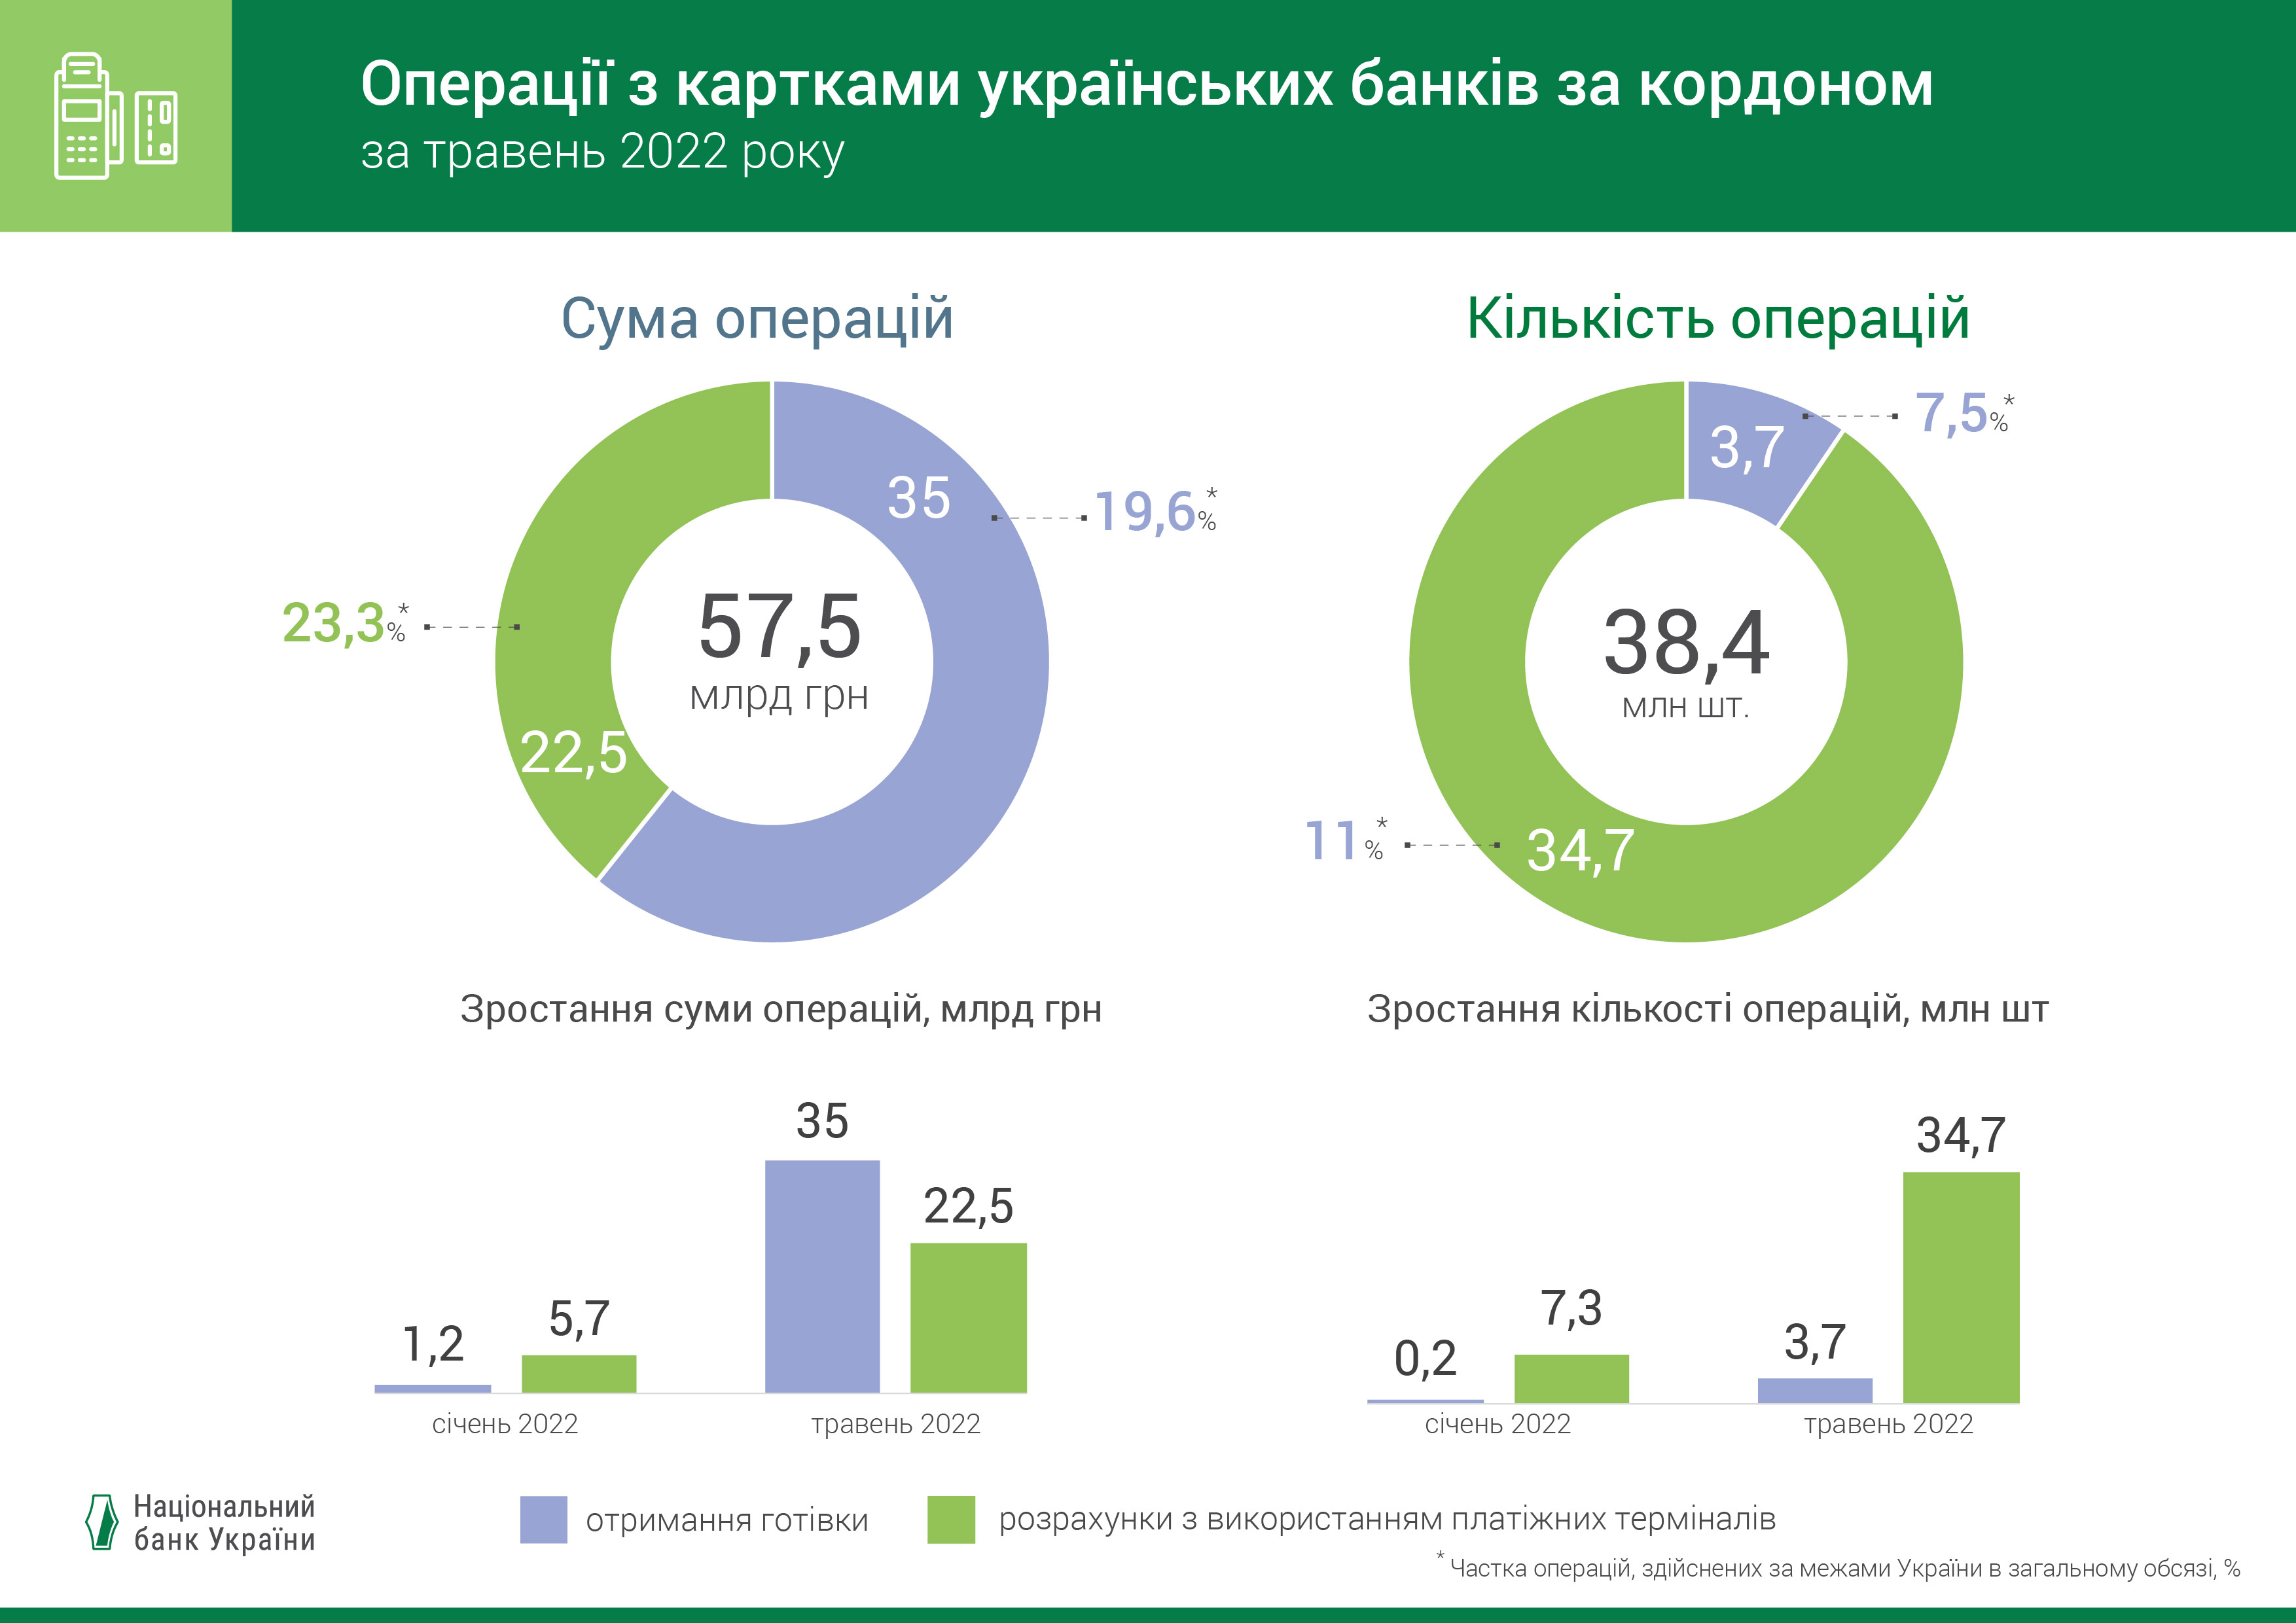 Операції з картками українських банків за кордоном, травень 2022 року